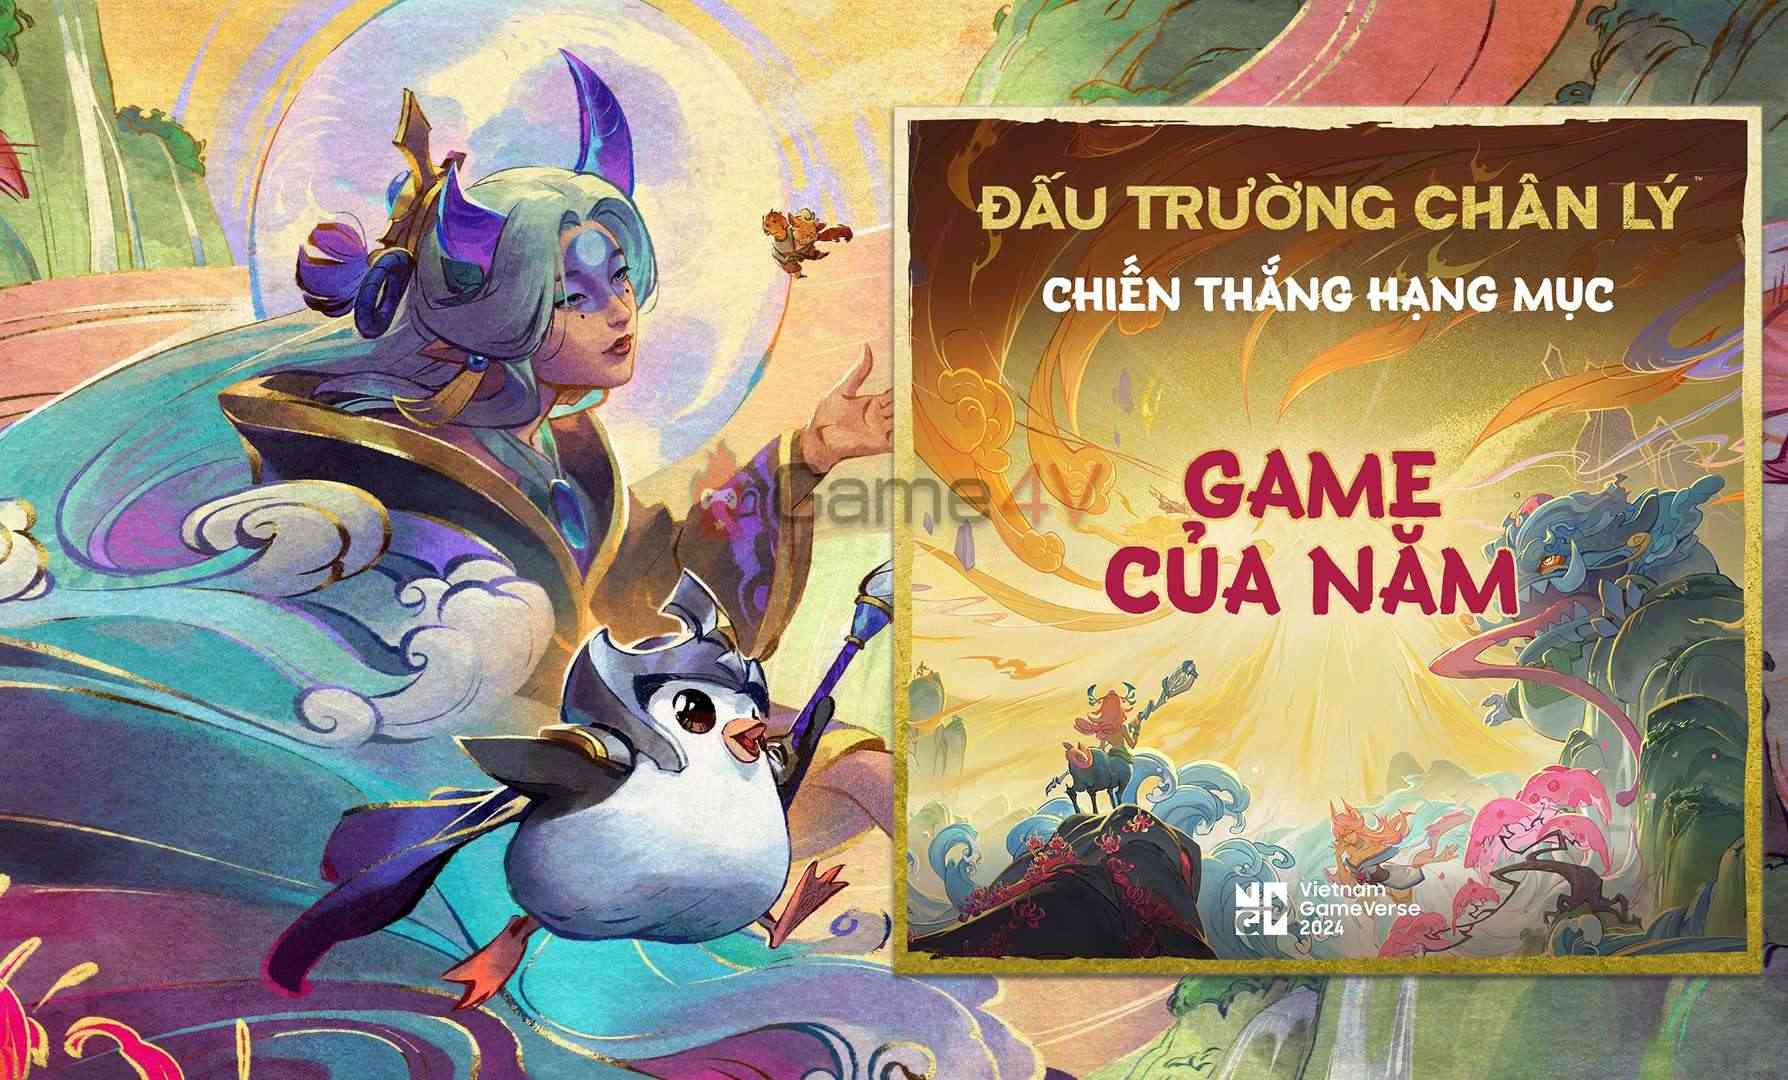 Đấu Trường Chân Lý giành giải Game Của Năm tại Vietnam GameVerse 2024